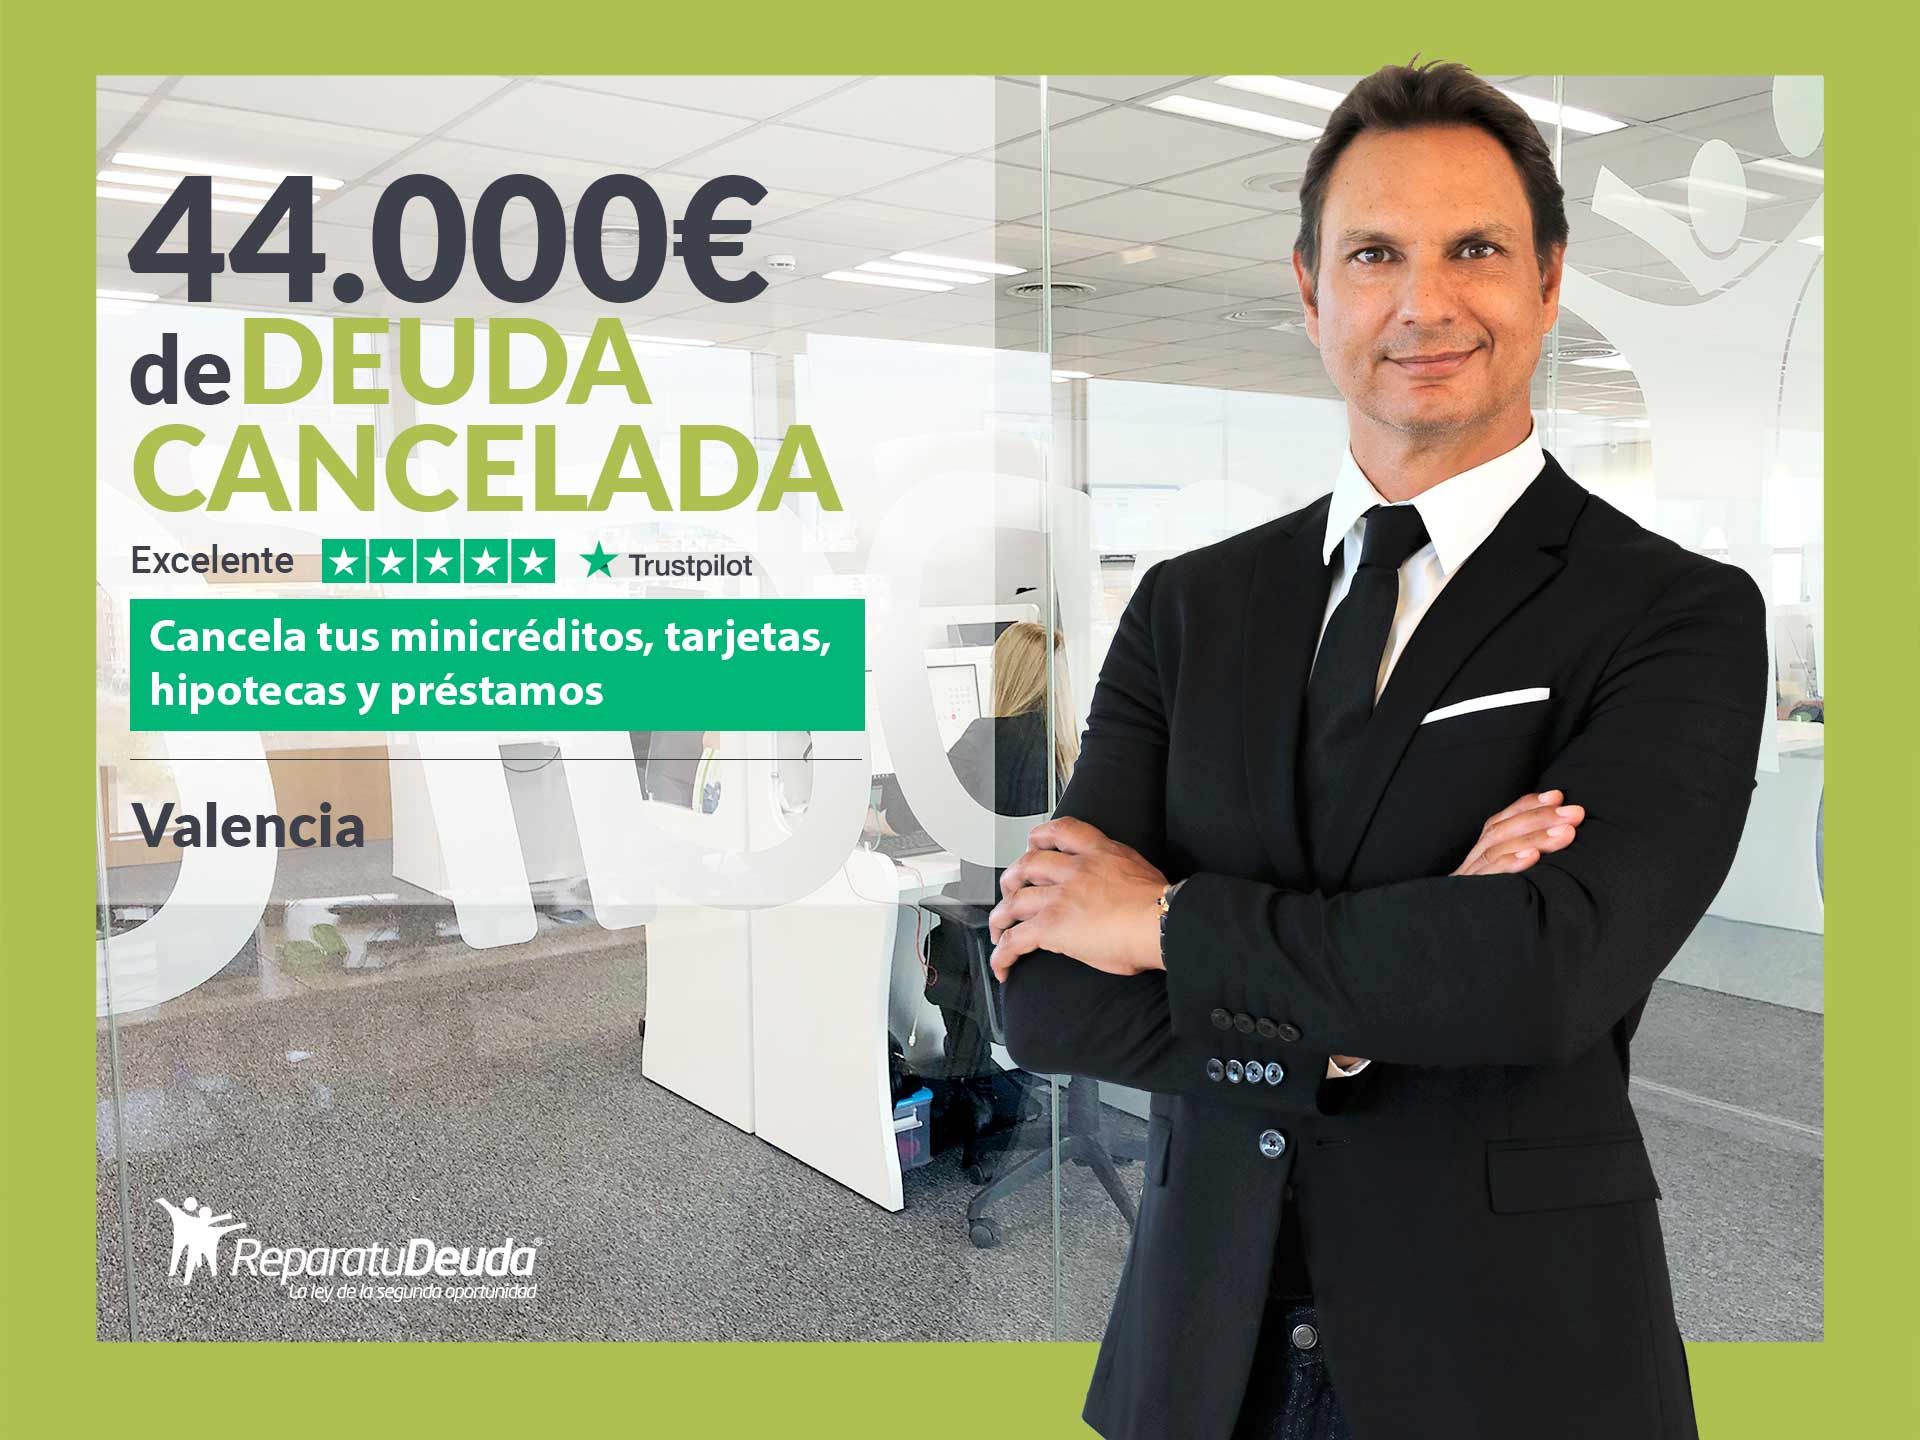 Repara tu Deuda Abogados cancela 44.000? en Valencia con la Ley de Segunda Oportunidad